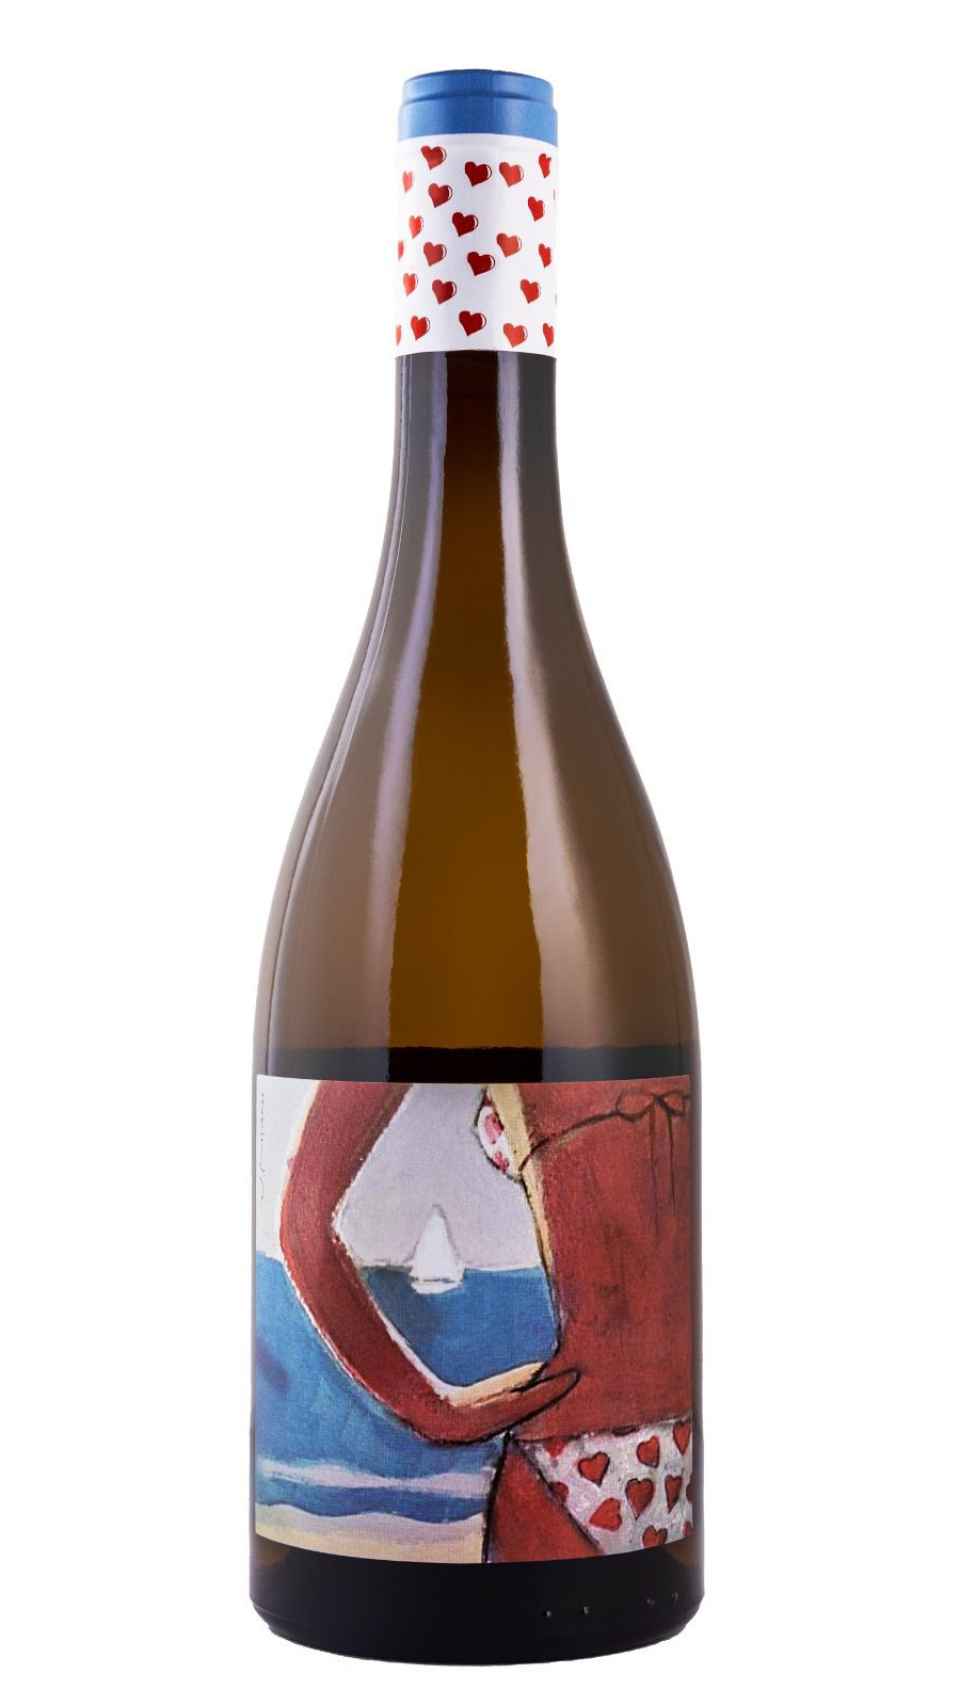 Imagen del vino 'Demasiado Corazón' con la etiqueta.